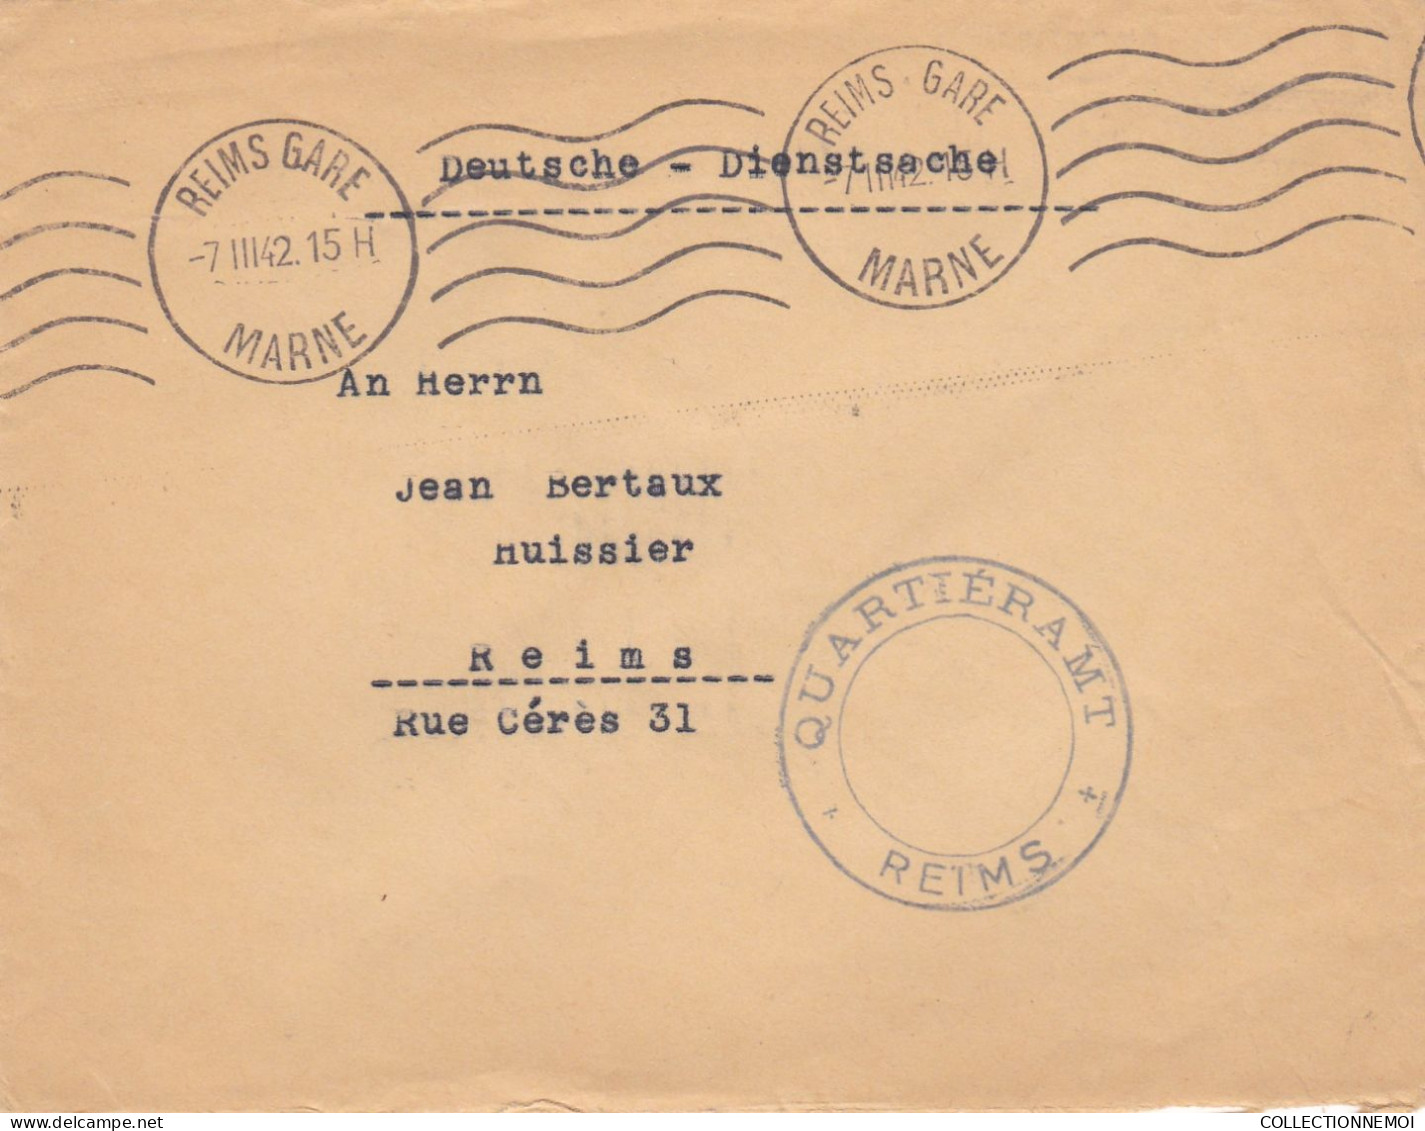 LOT DE 40 ,, lettres  période de GUERRE ,,1939/45  pour specialiste ,,,scan recto et verso ,,,,et VENDUE COMME C'EST